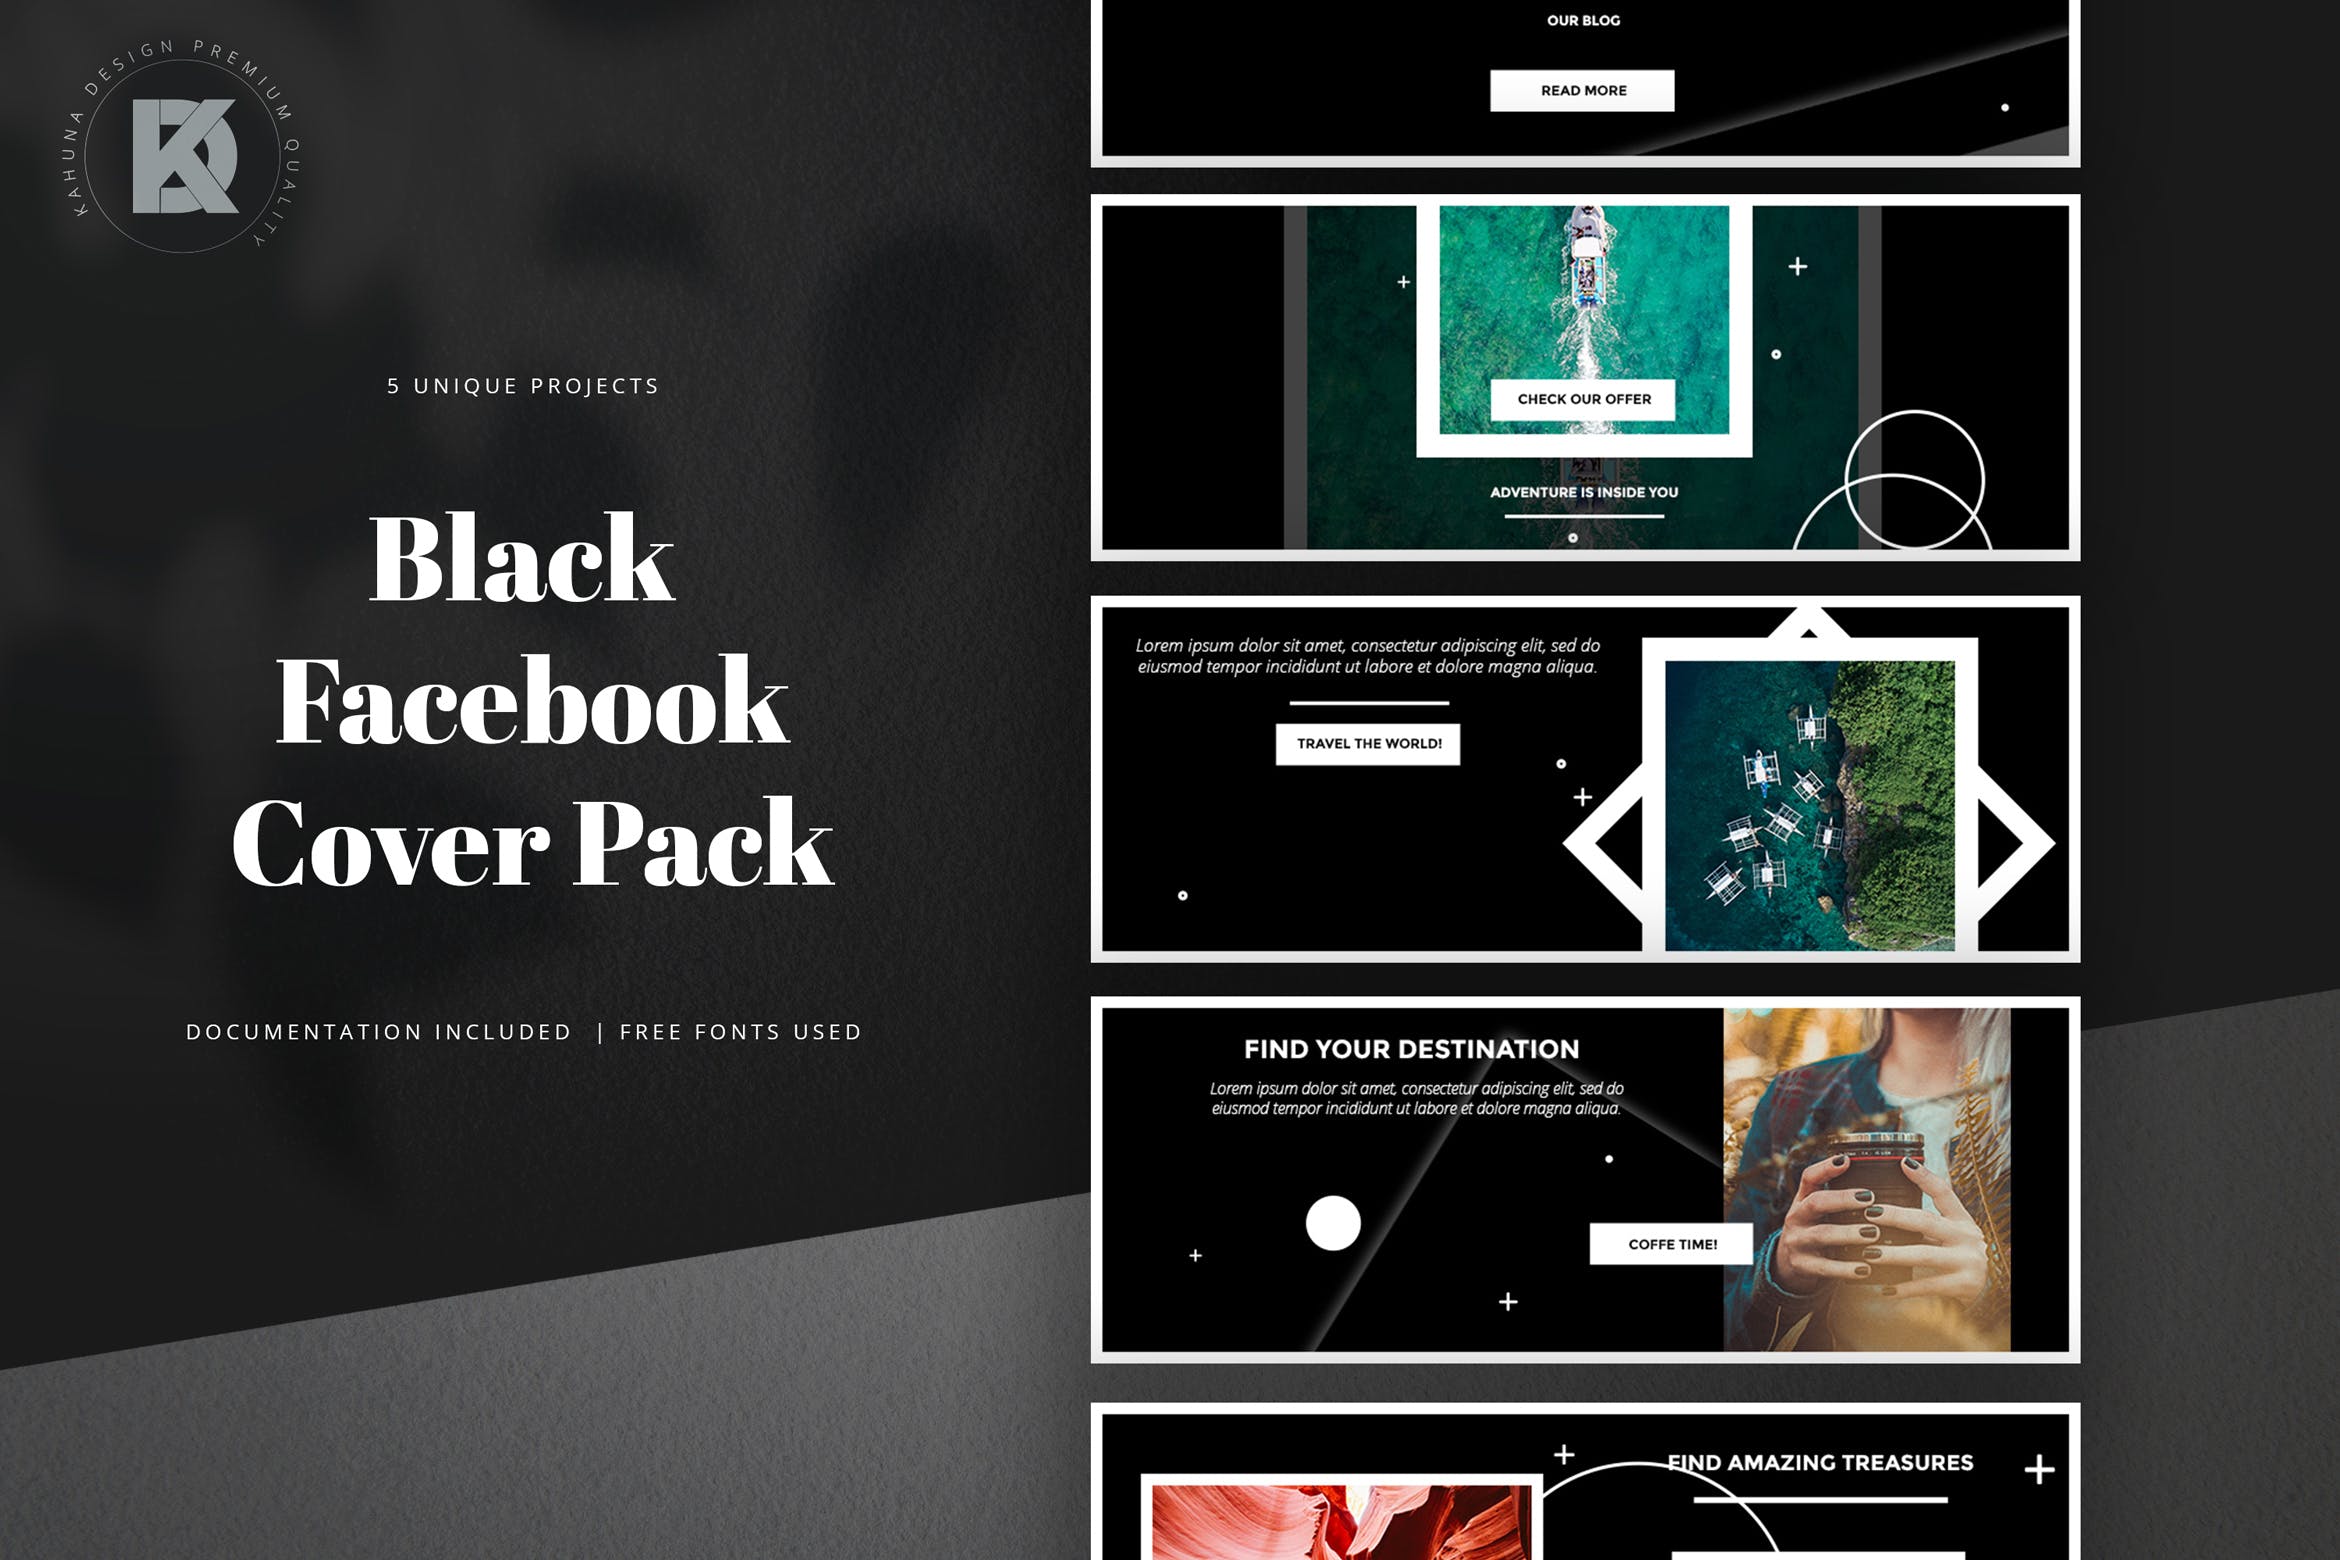 黑色背景Facebook主页封面设计模板第一素材精选 Black Facebook Cover Pack插图